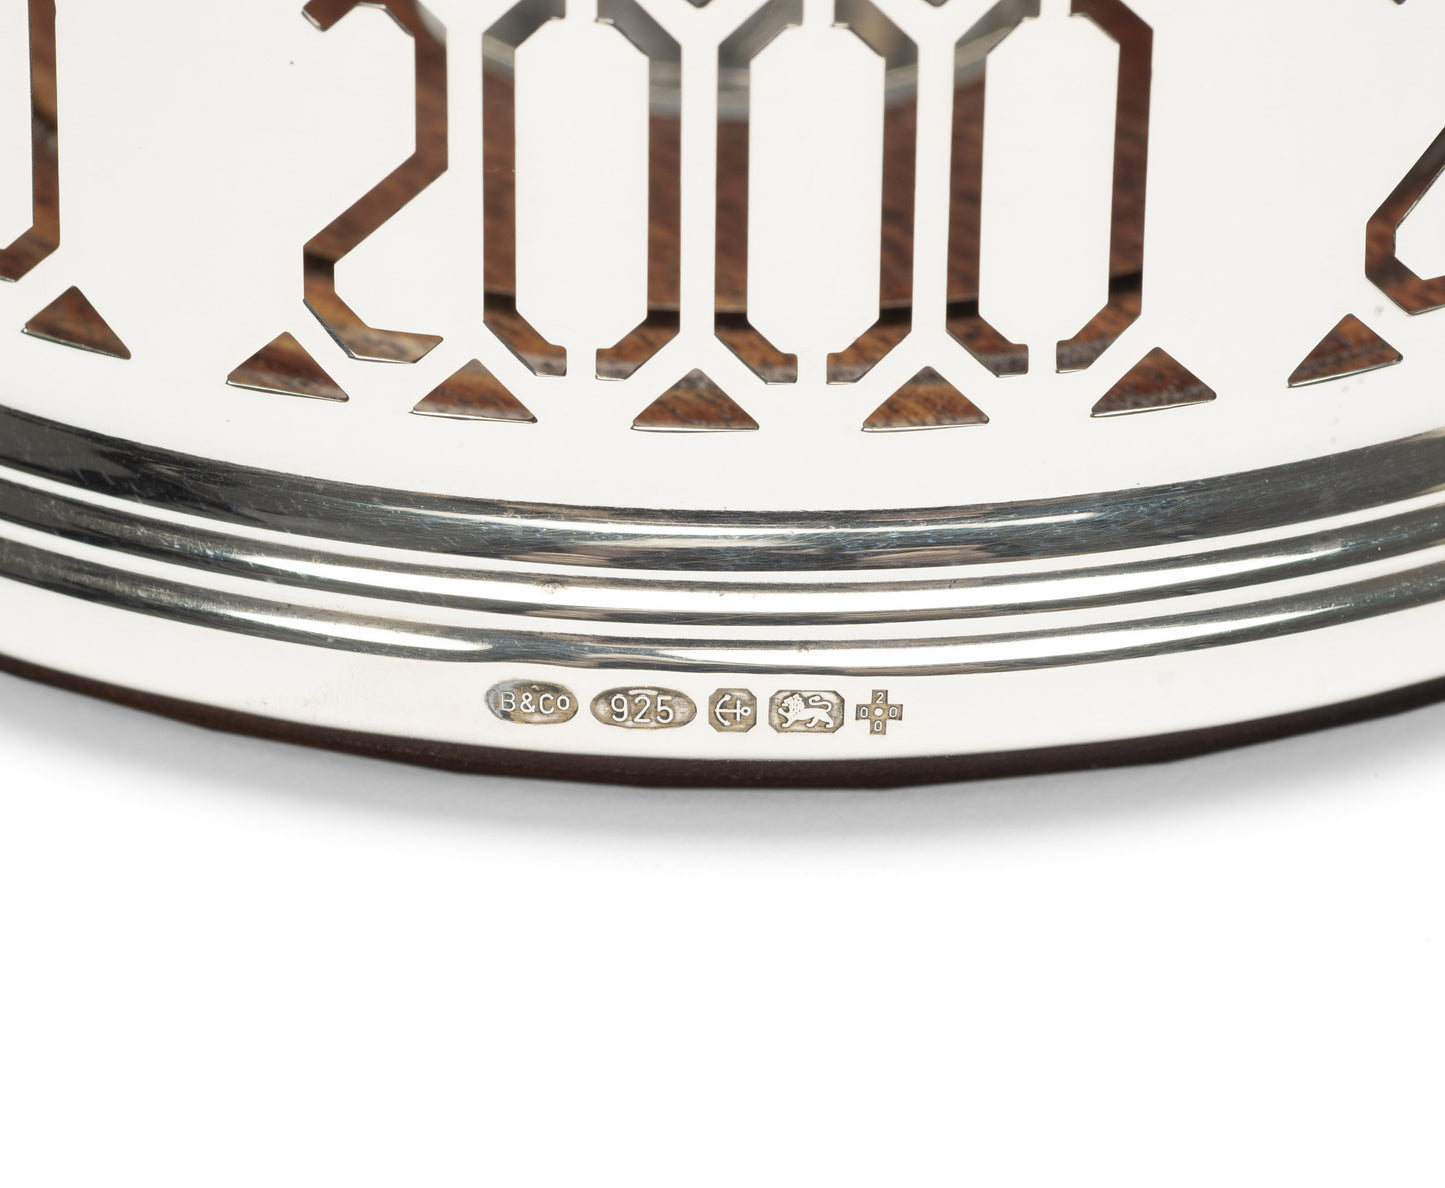 Sterling Silver Hallmarked Year 2000 Millennium Wine Bottle / Decanter Coaster (Code 2193)